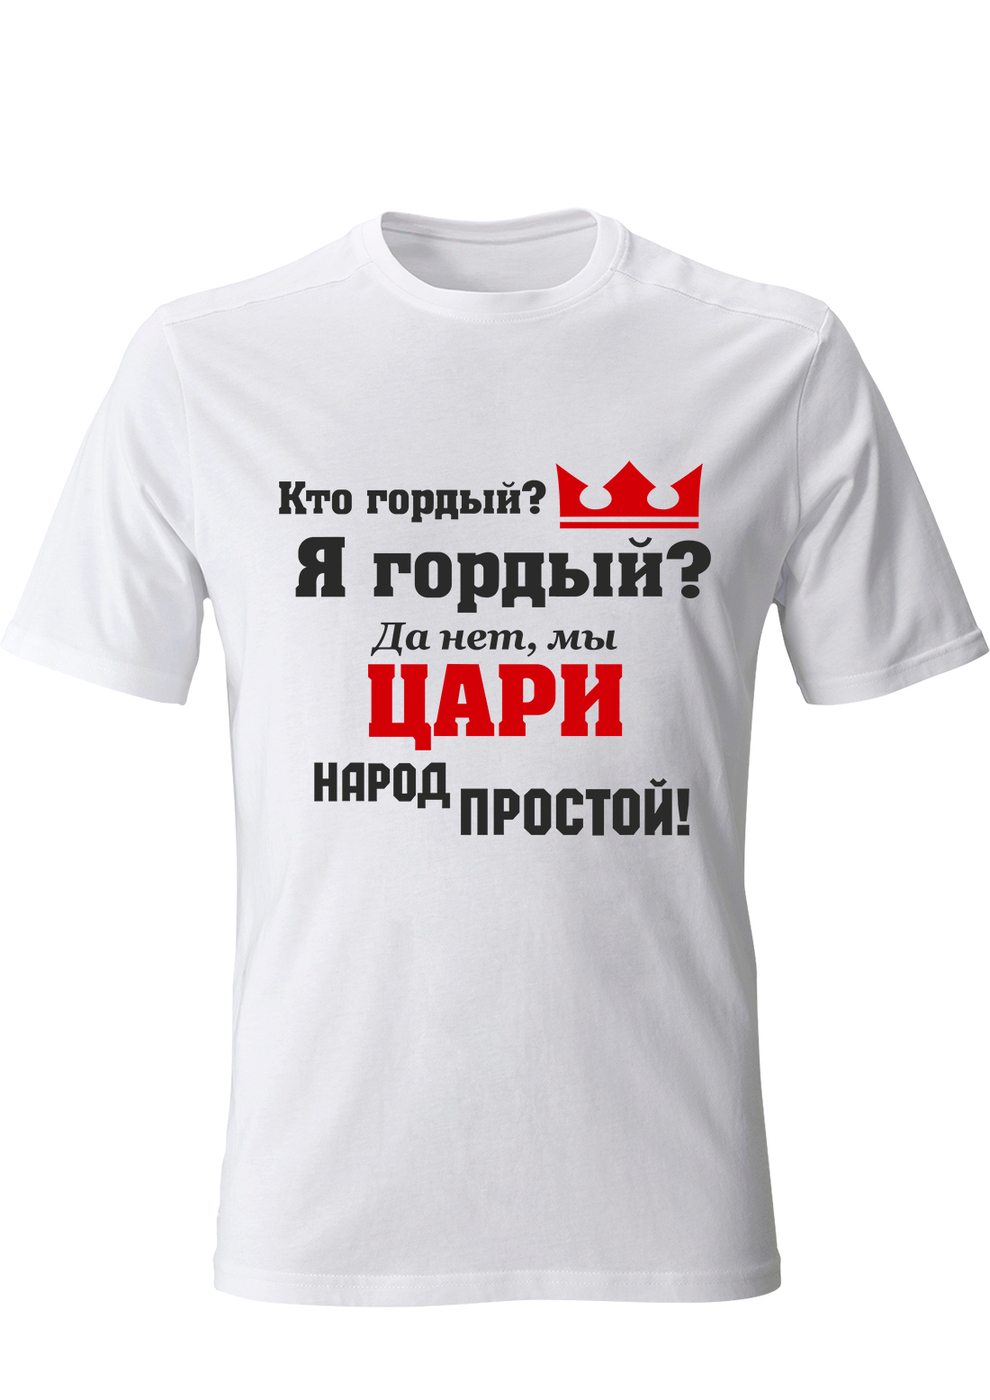 печать на футболках в москве